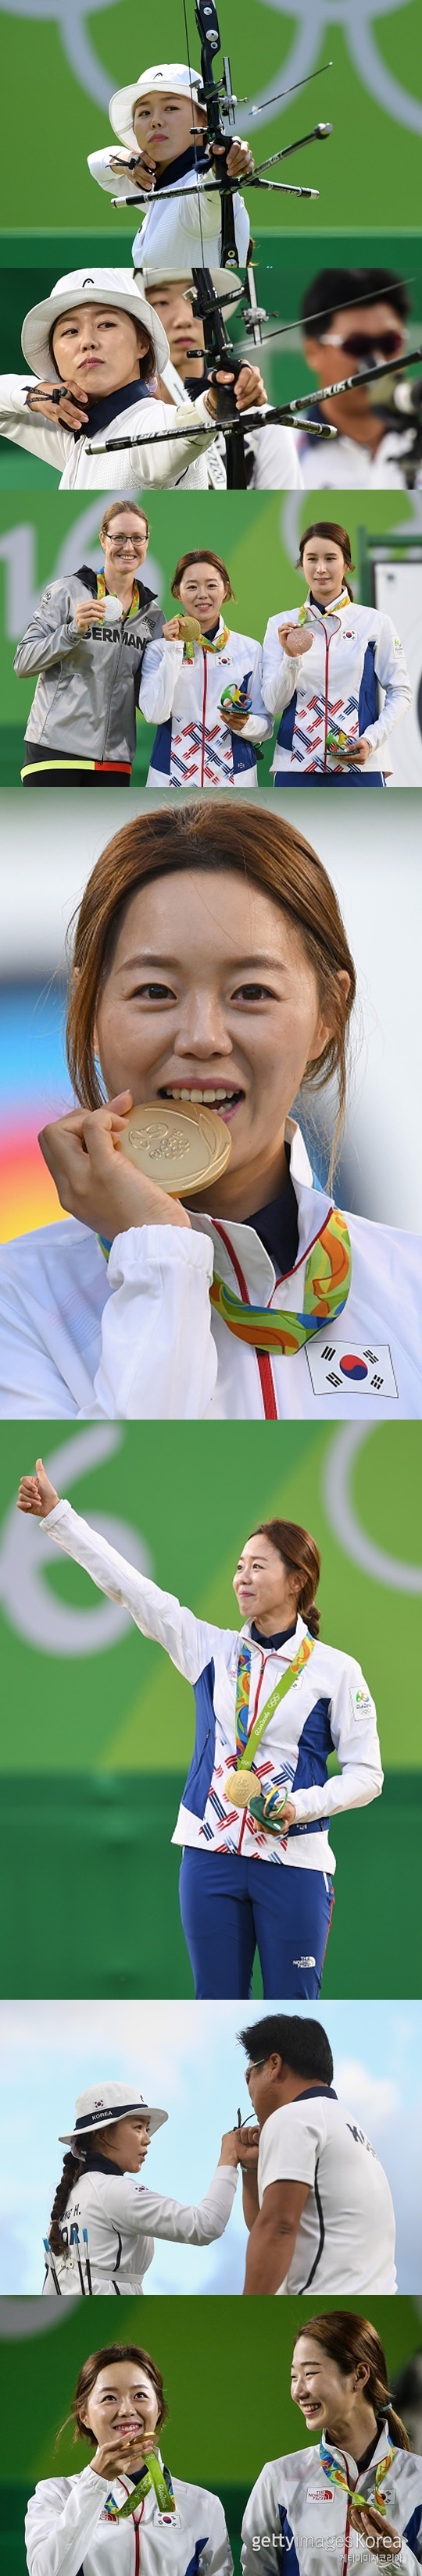 리우 올림픽 영광의 2관왕의 주인공 장혜진(사진=게티이미지 코리아)